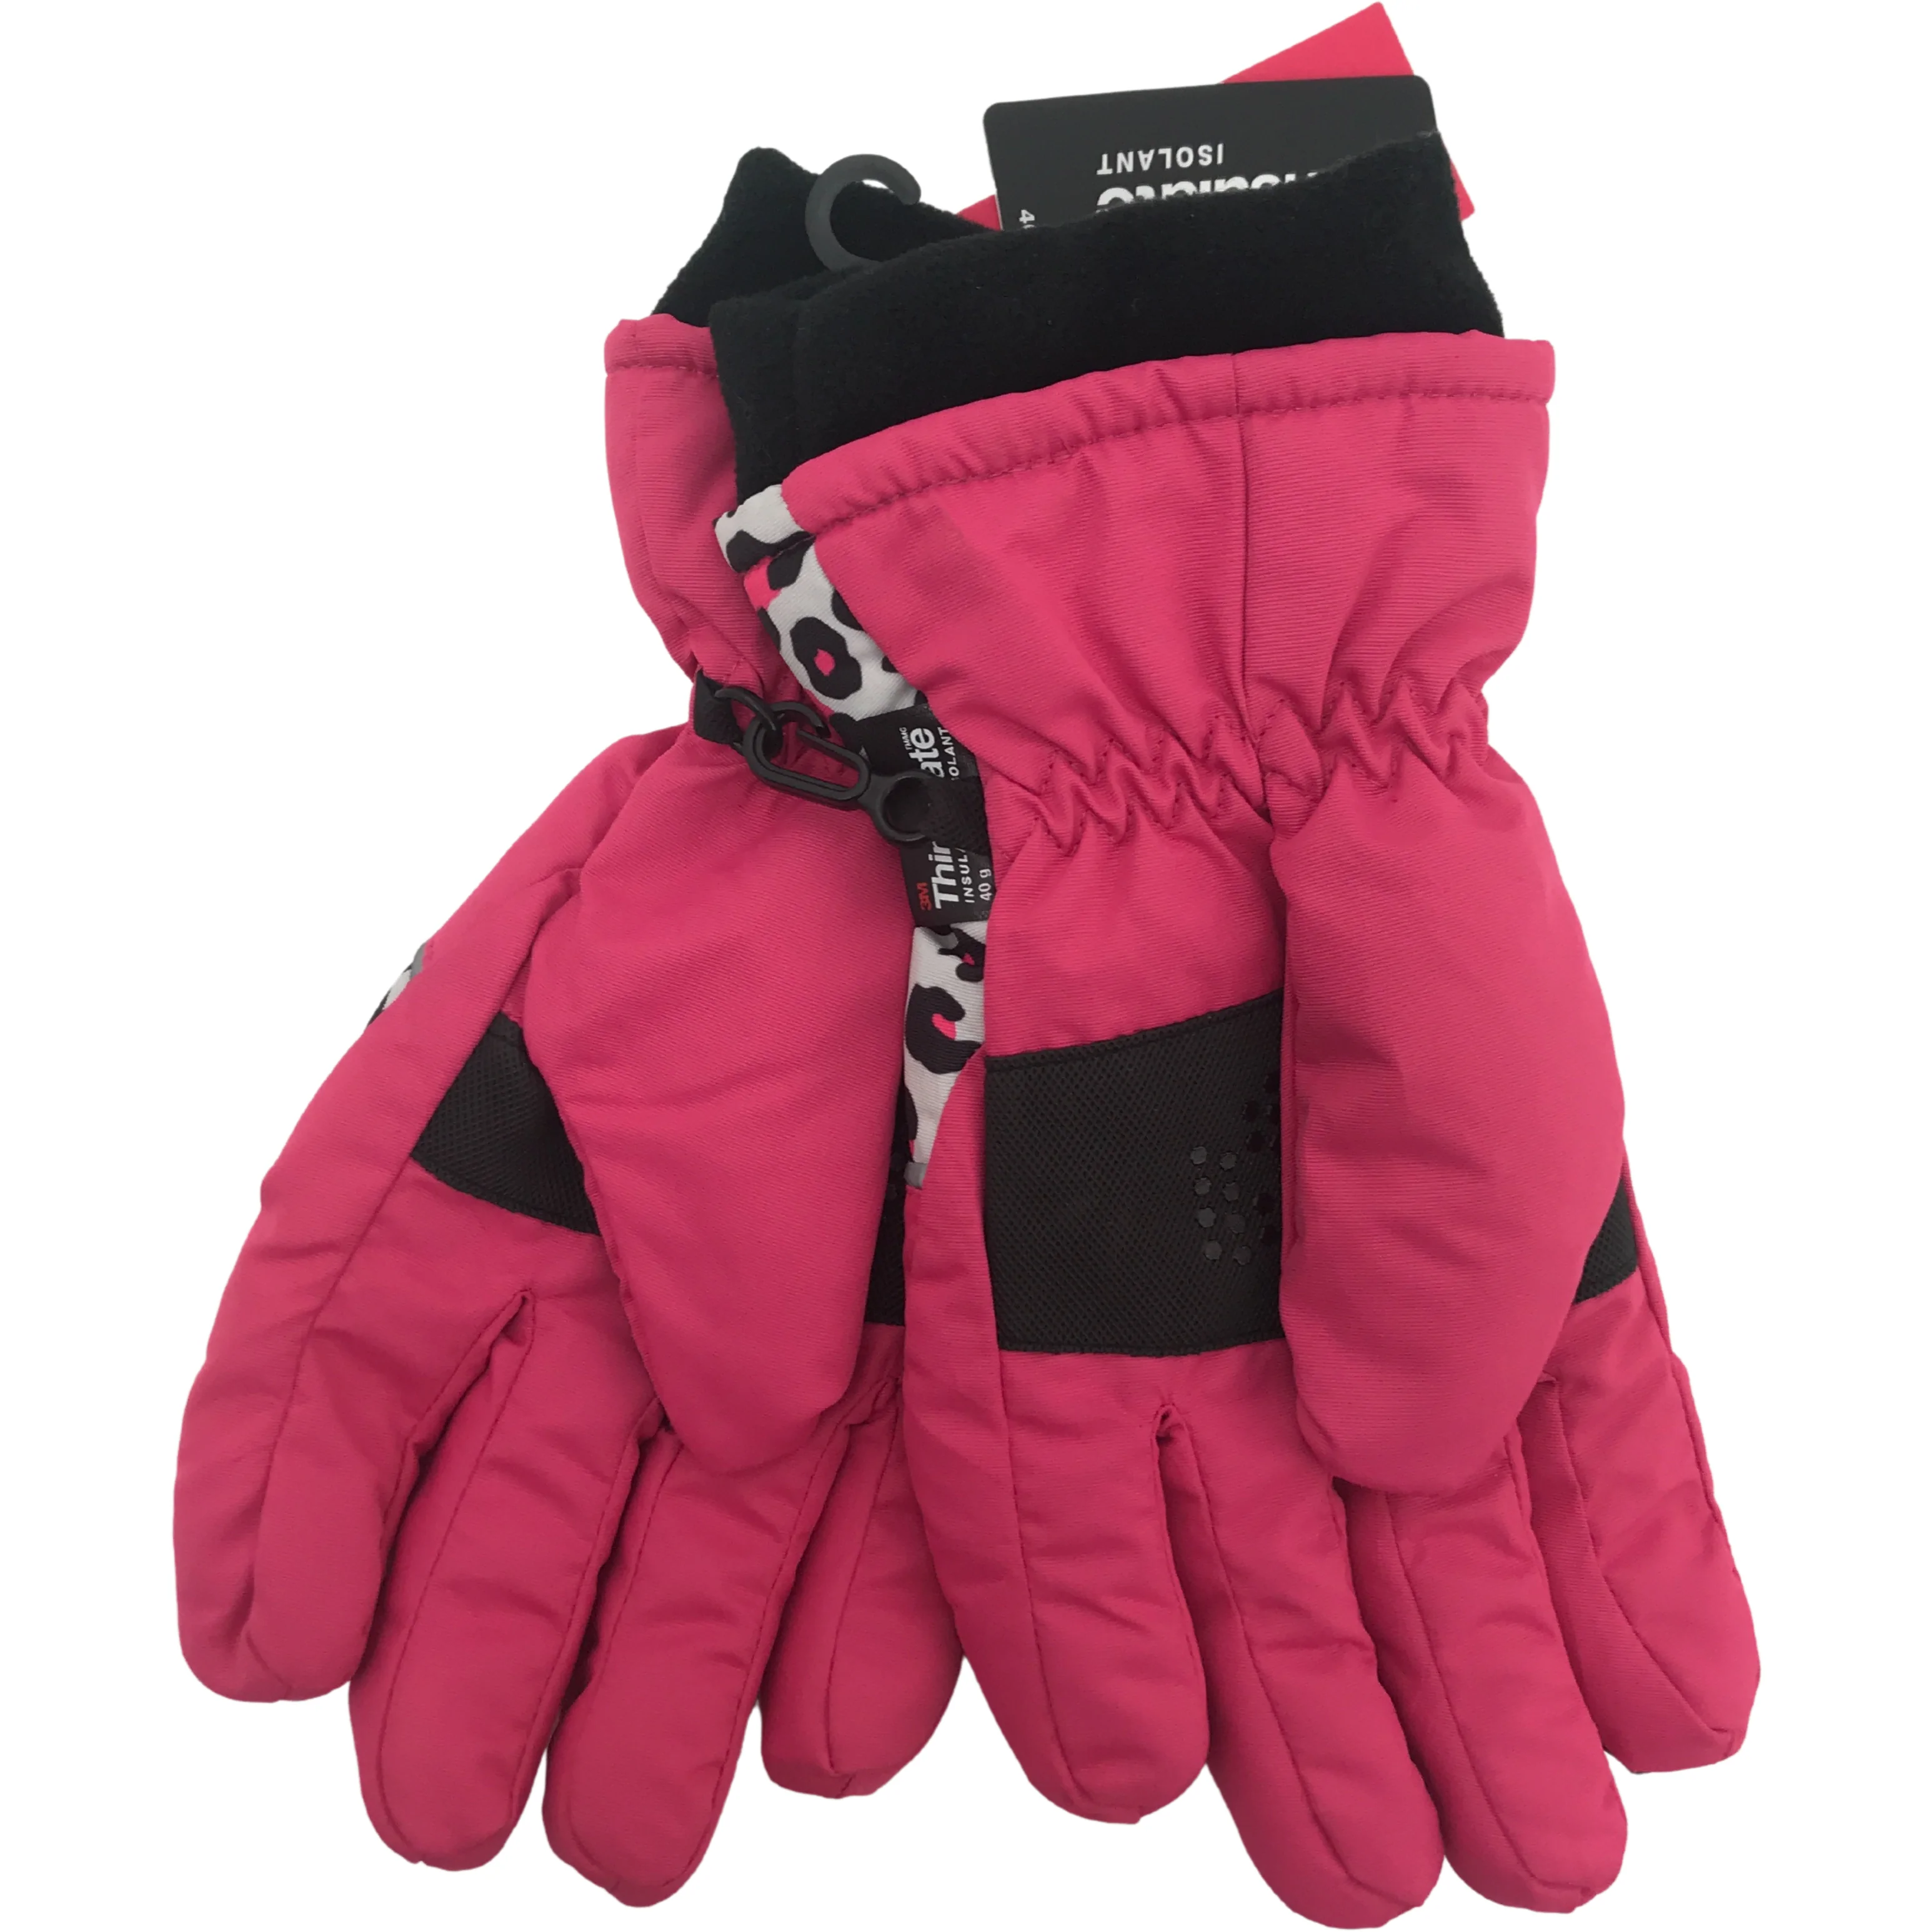 Minus Zero Children's Winter Gloves / Girl's Gloves / Pink & Leopard / Size 7-16